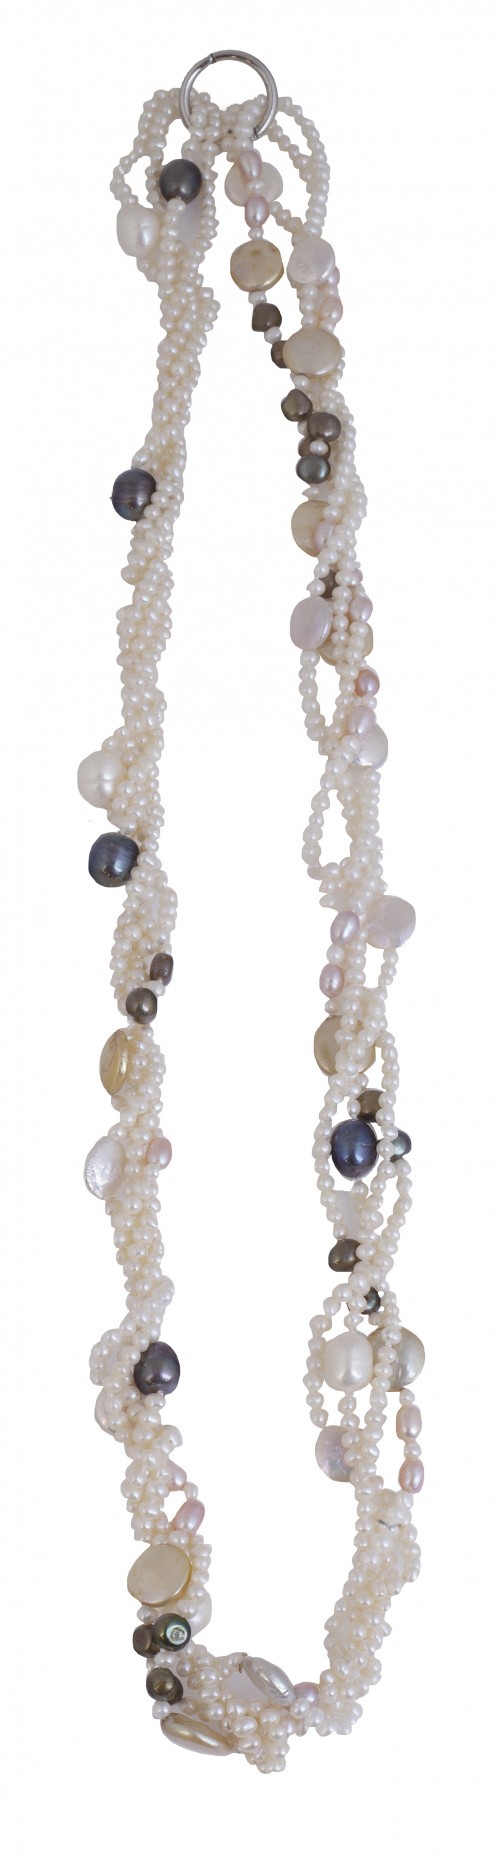 Collar de cuatro hilos de perlas que combina perlas blancas